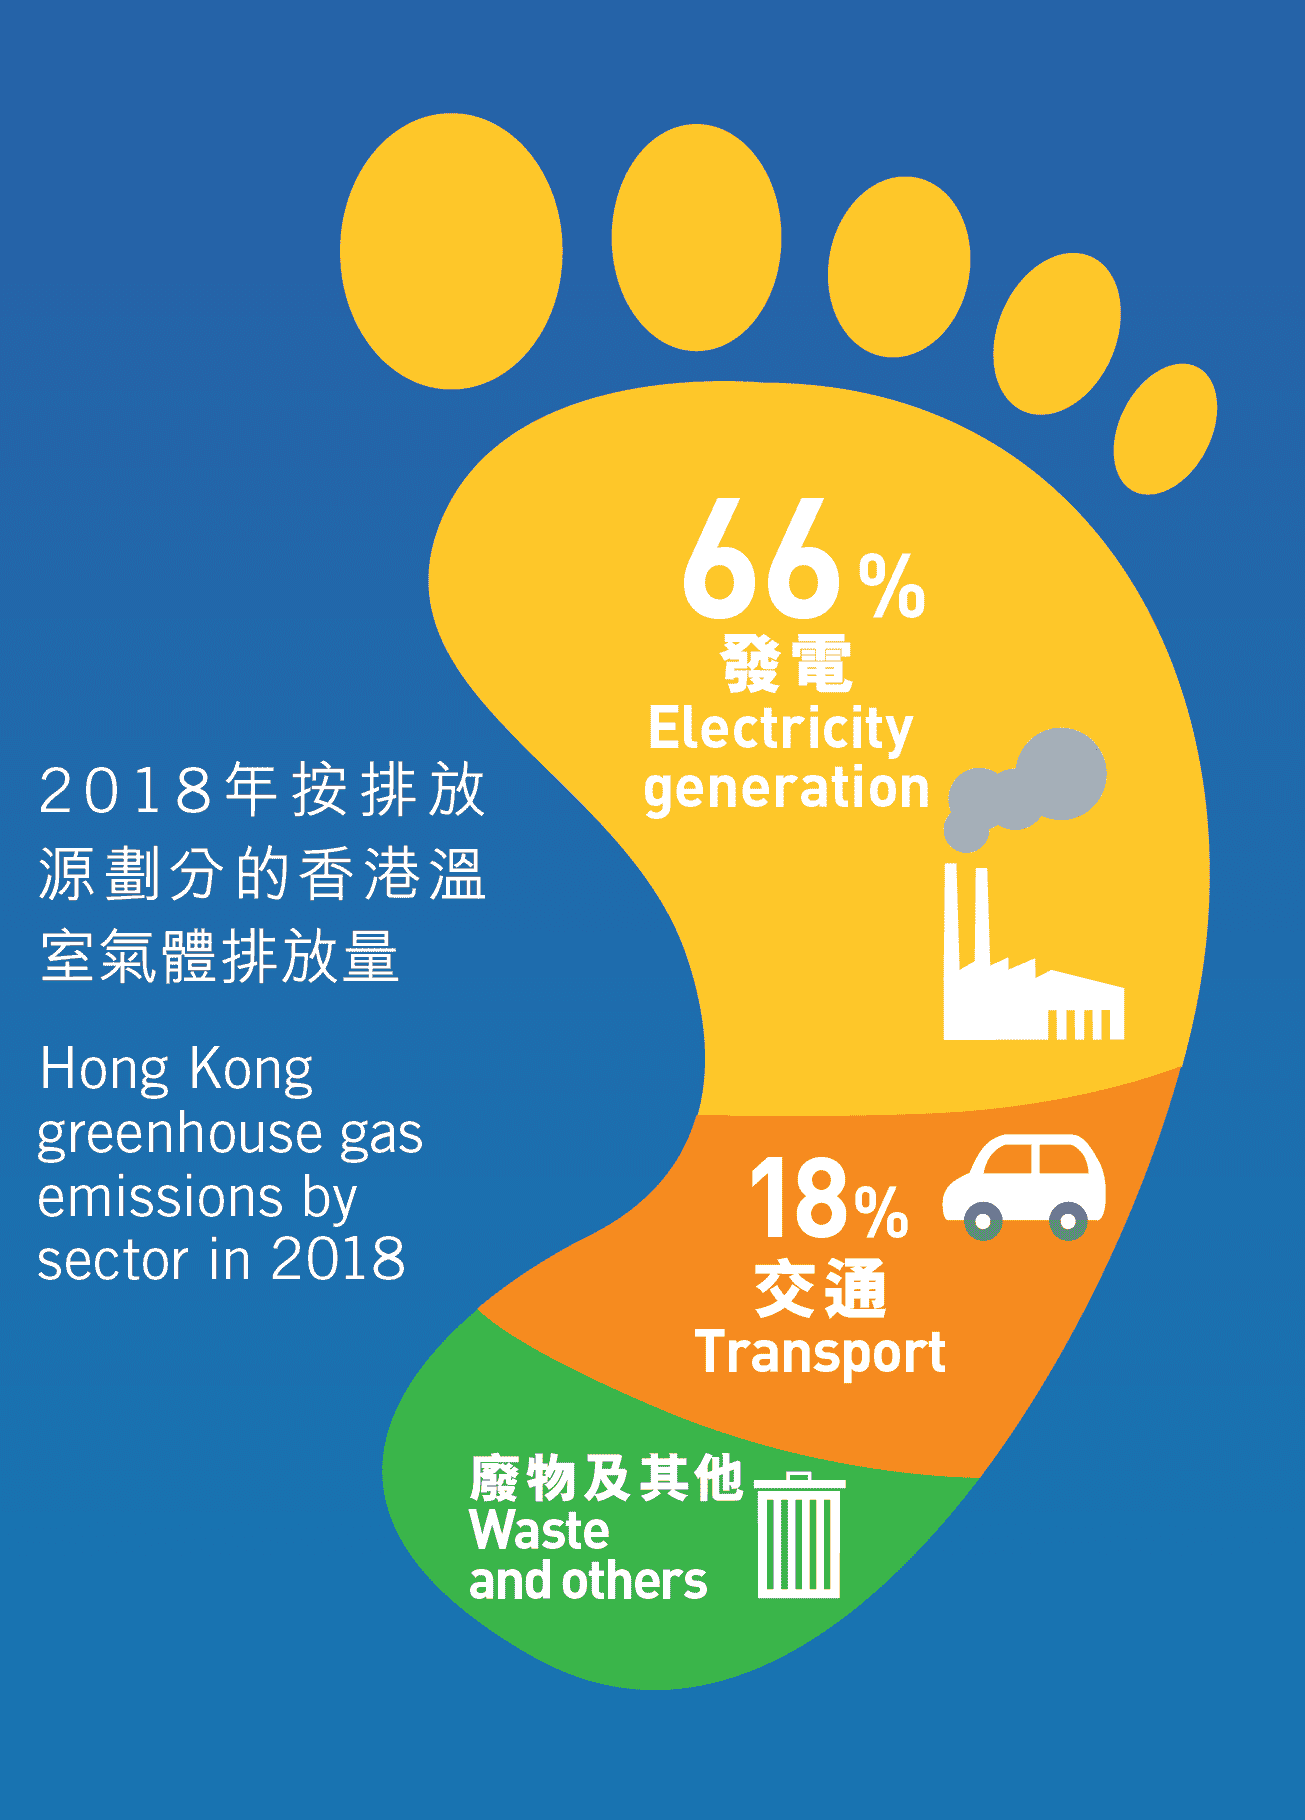 2018年按排放源劃分的香港溫室氣體排放量 (資料來源: 環境局)